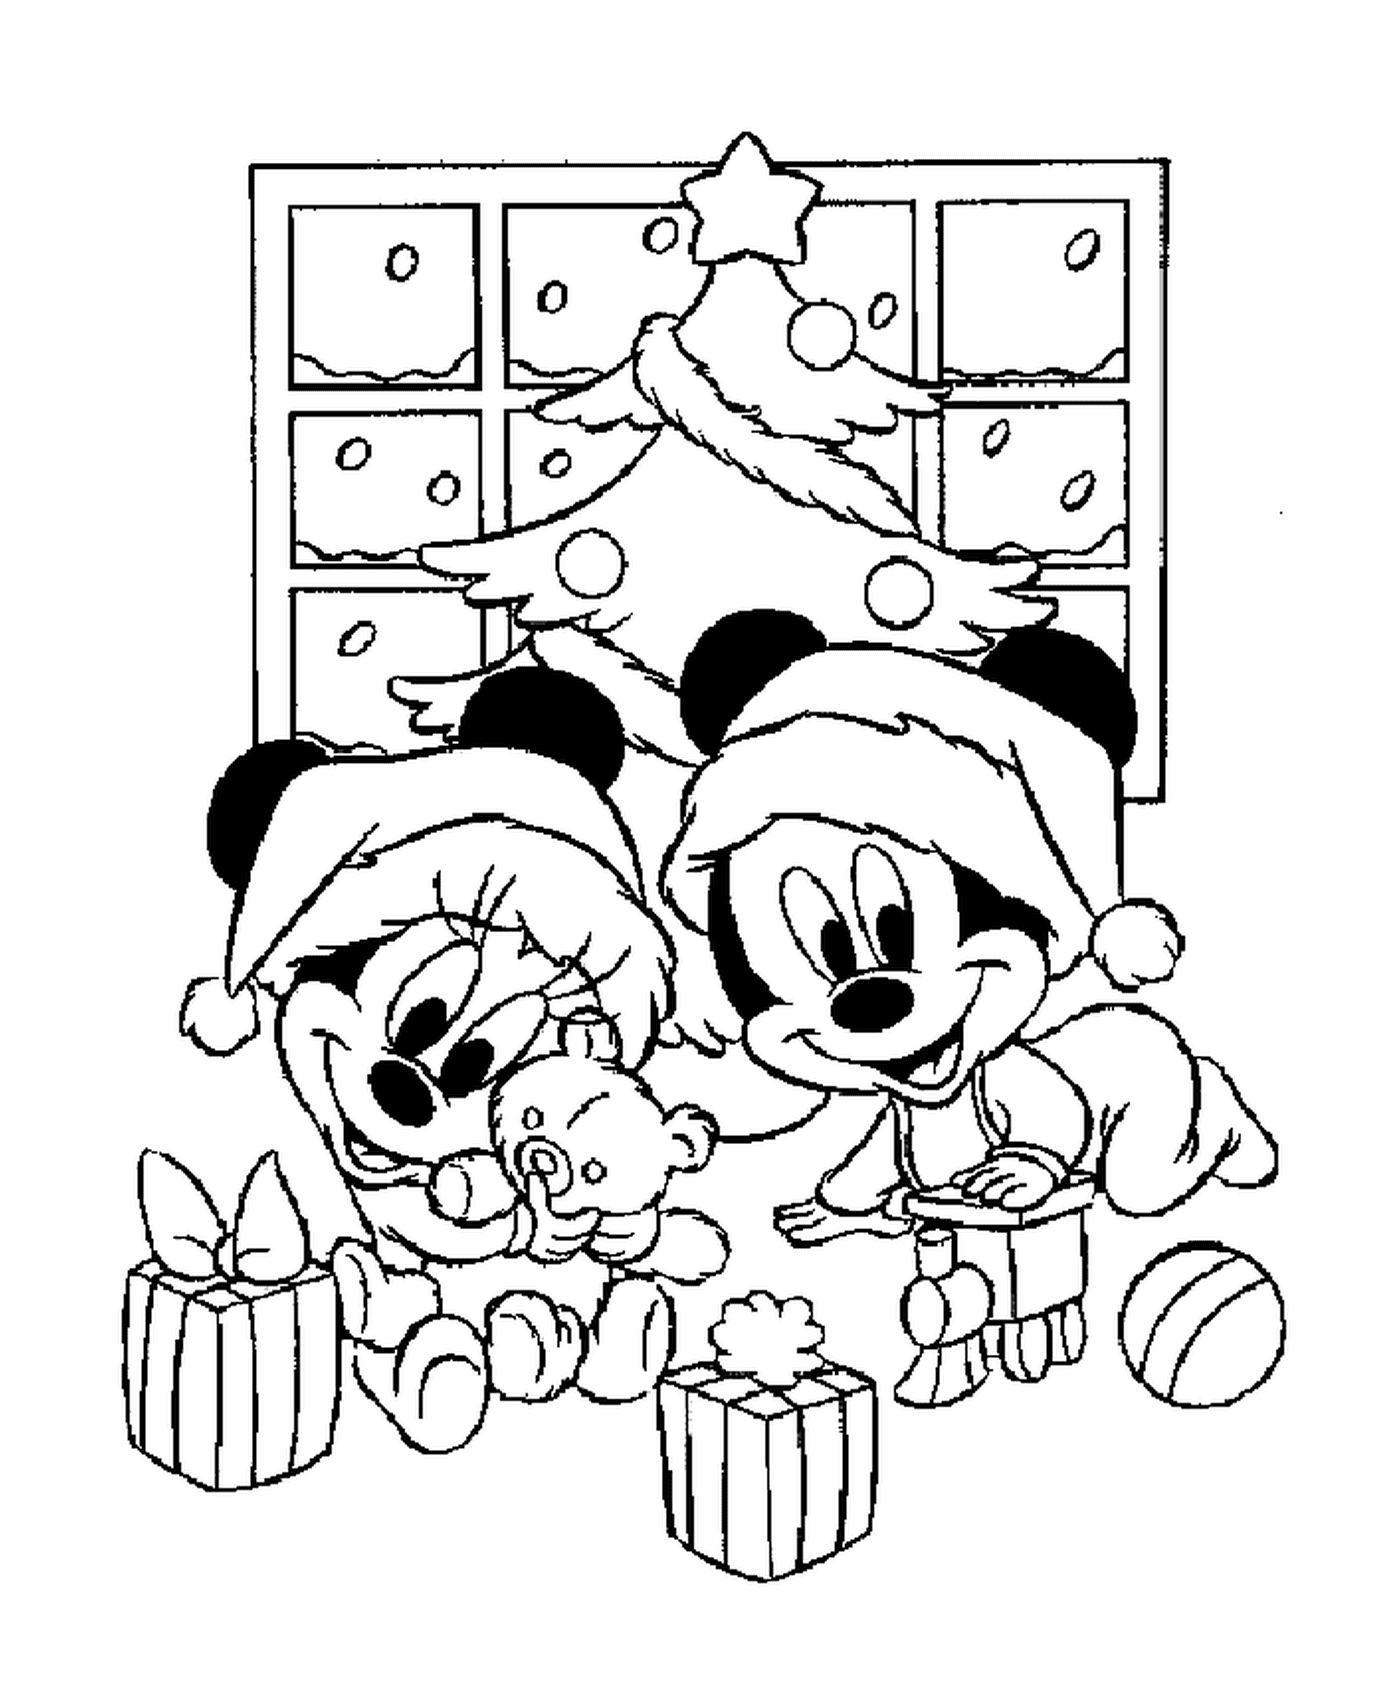  Bambini Mickey e Minnie giocano con i loro regali davanti all'albero 